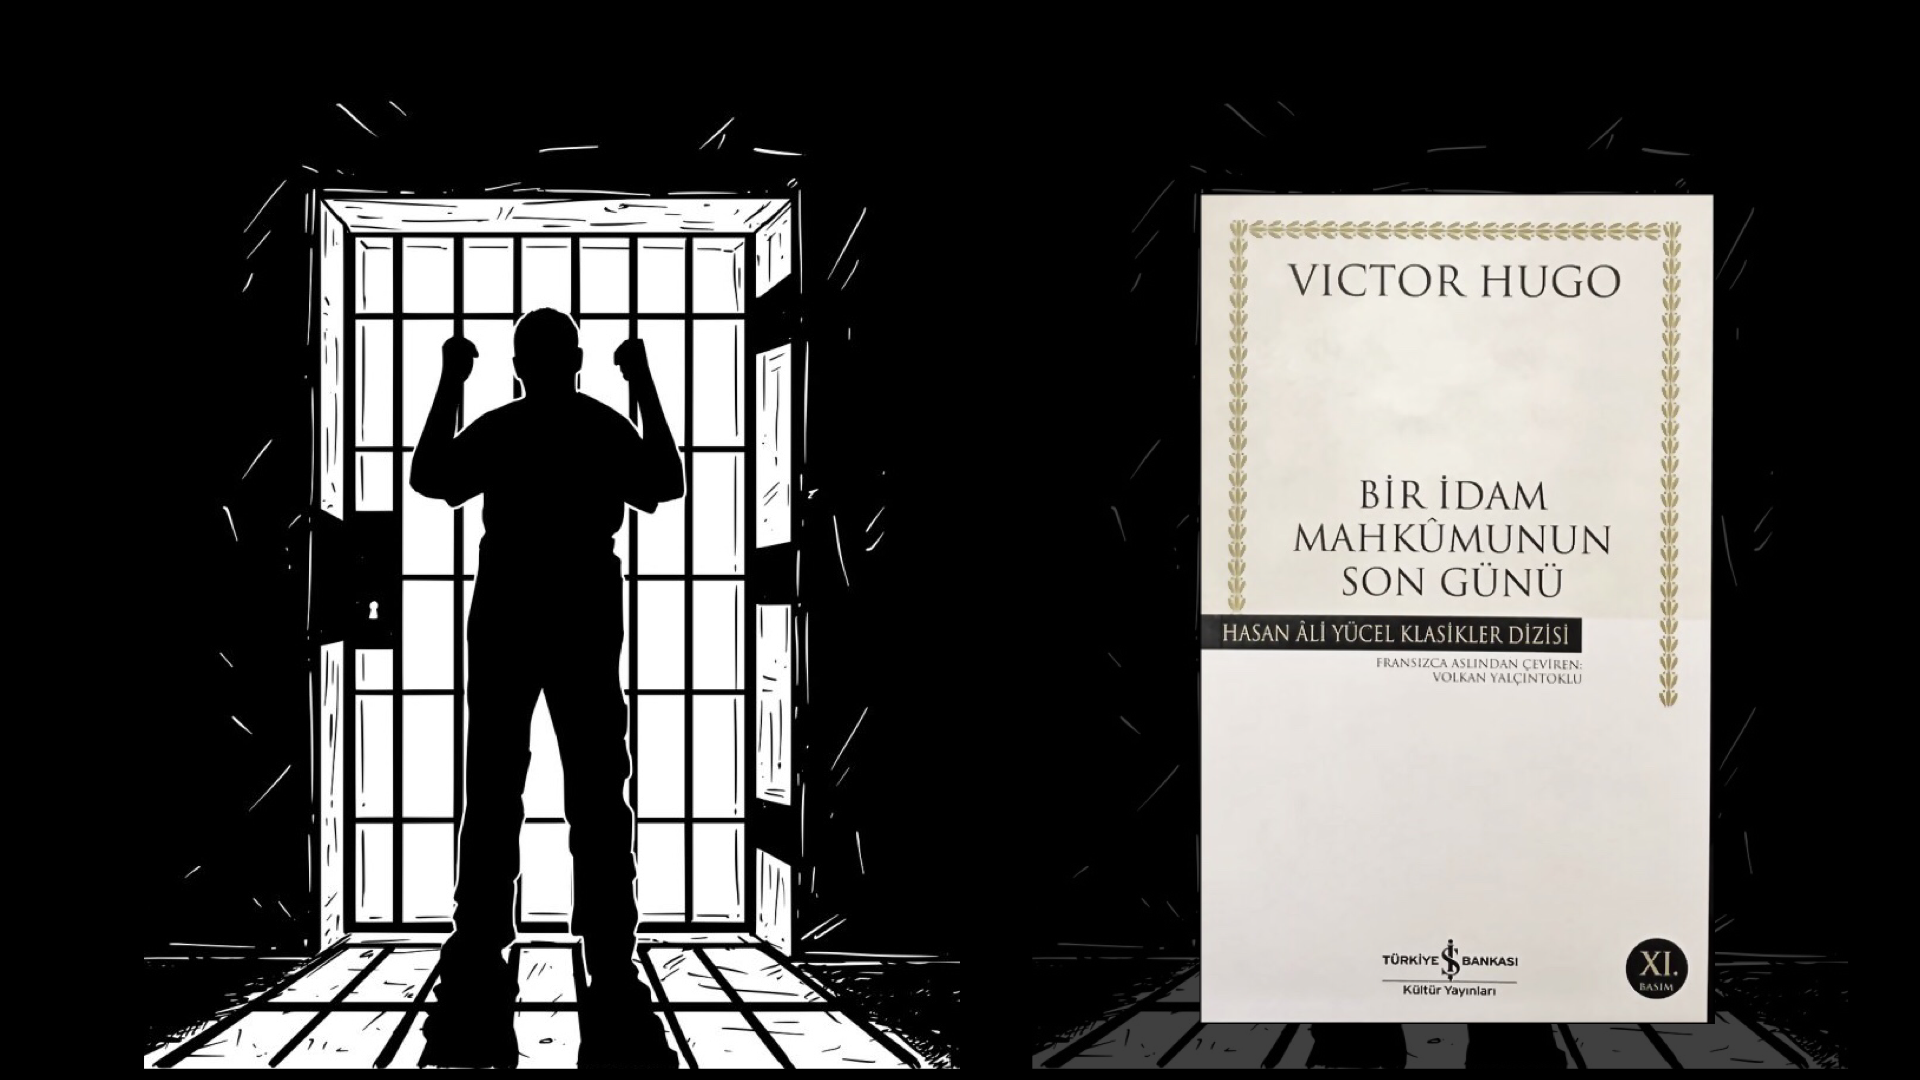 Kitap: Bir İdam Mahkumunun Son Günü | Yazar: Victor Hugo | Yorumlayan: Hülya Erarslan